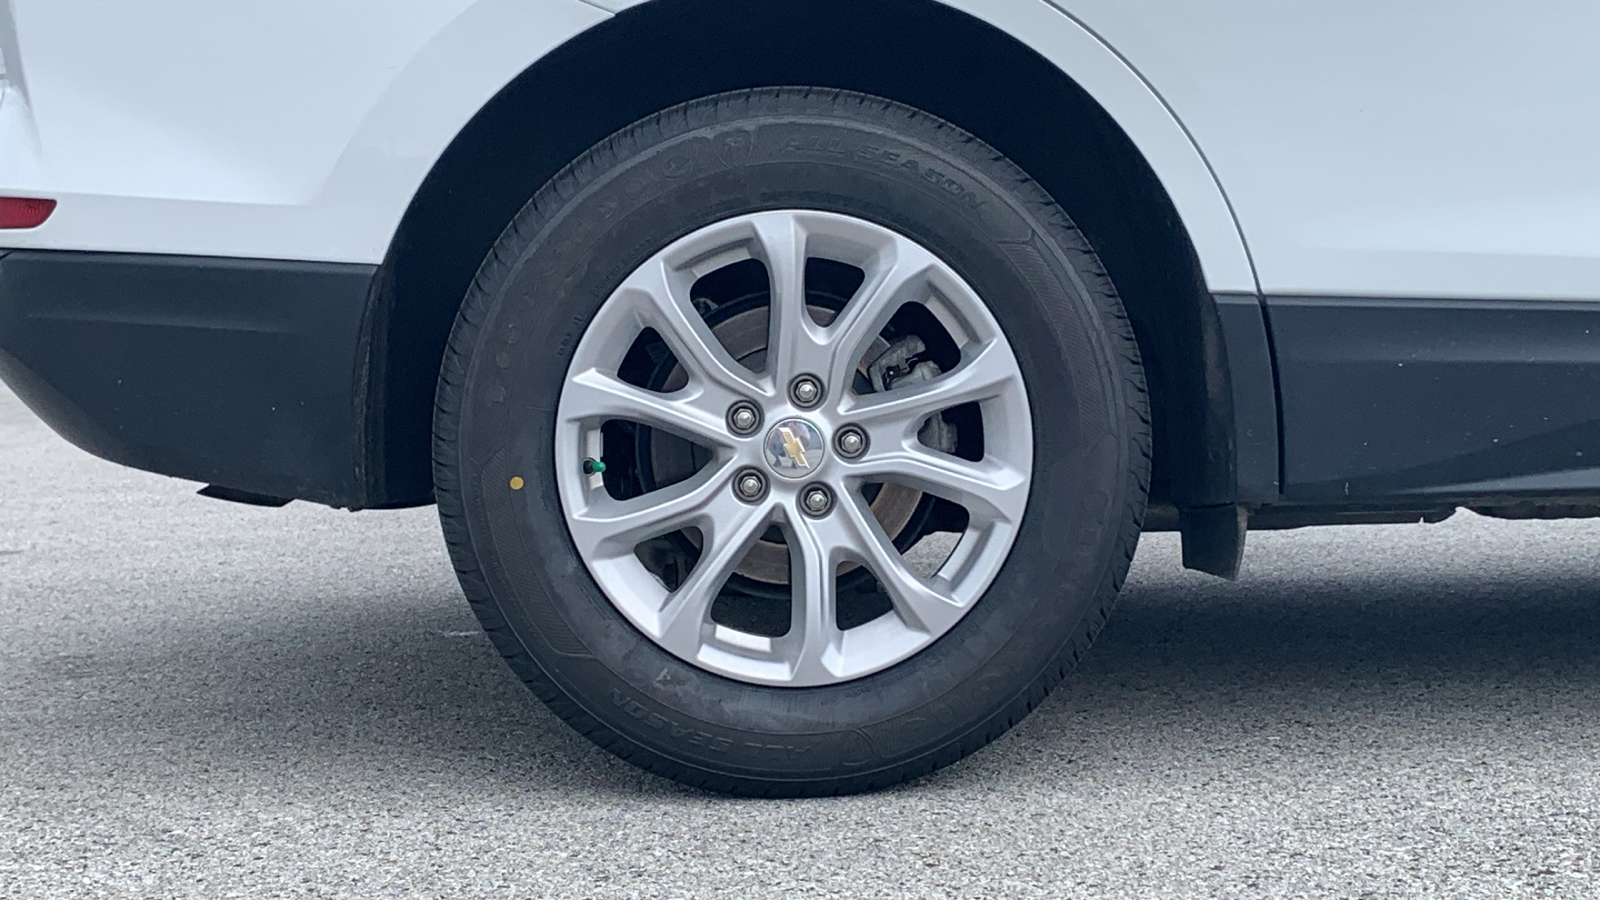 2019 Chevrolet Equinox LS 9